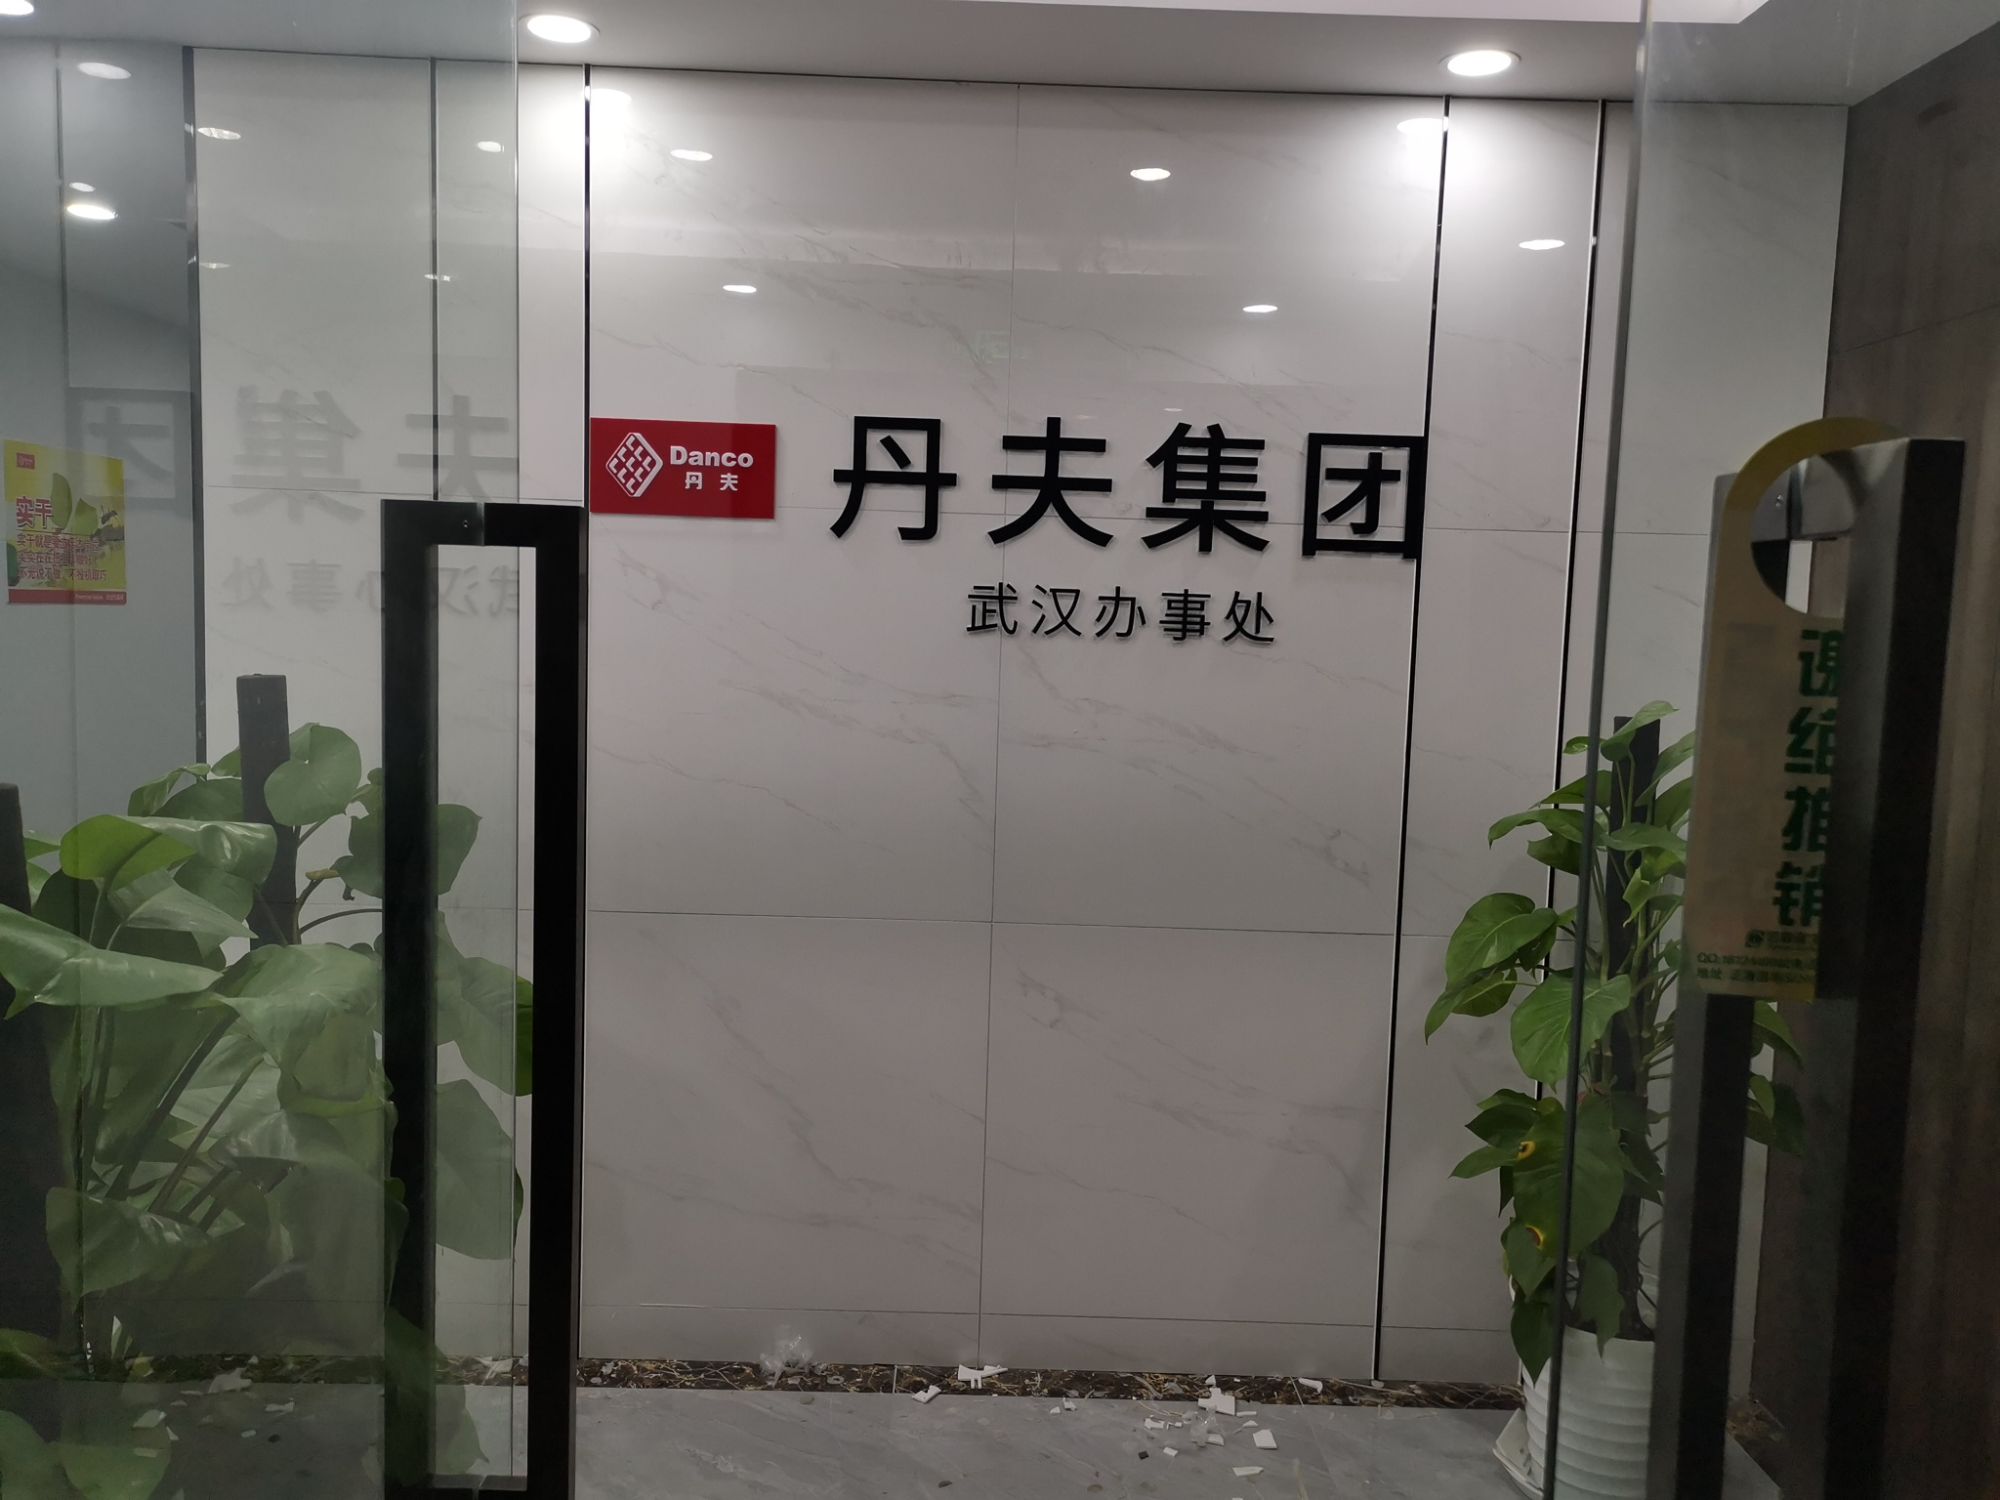 丹夫集团武汉办事处前台LOGO文化墙